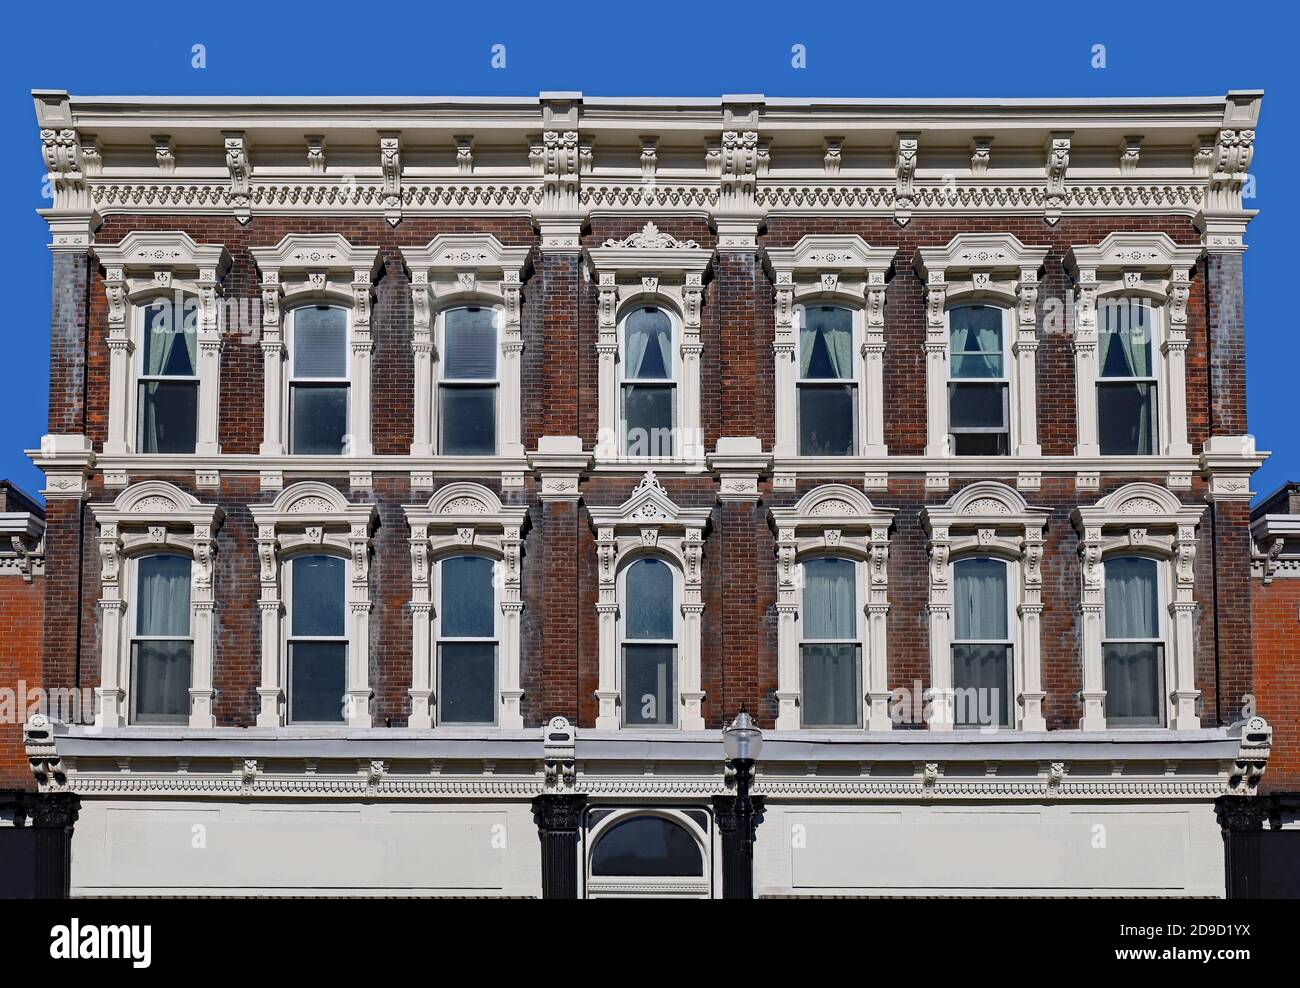 Ancien immeuble du XIXe siècle avec finitions ornementales fenêtres et toit Banque D'Images